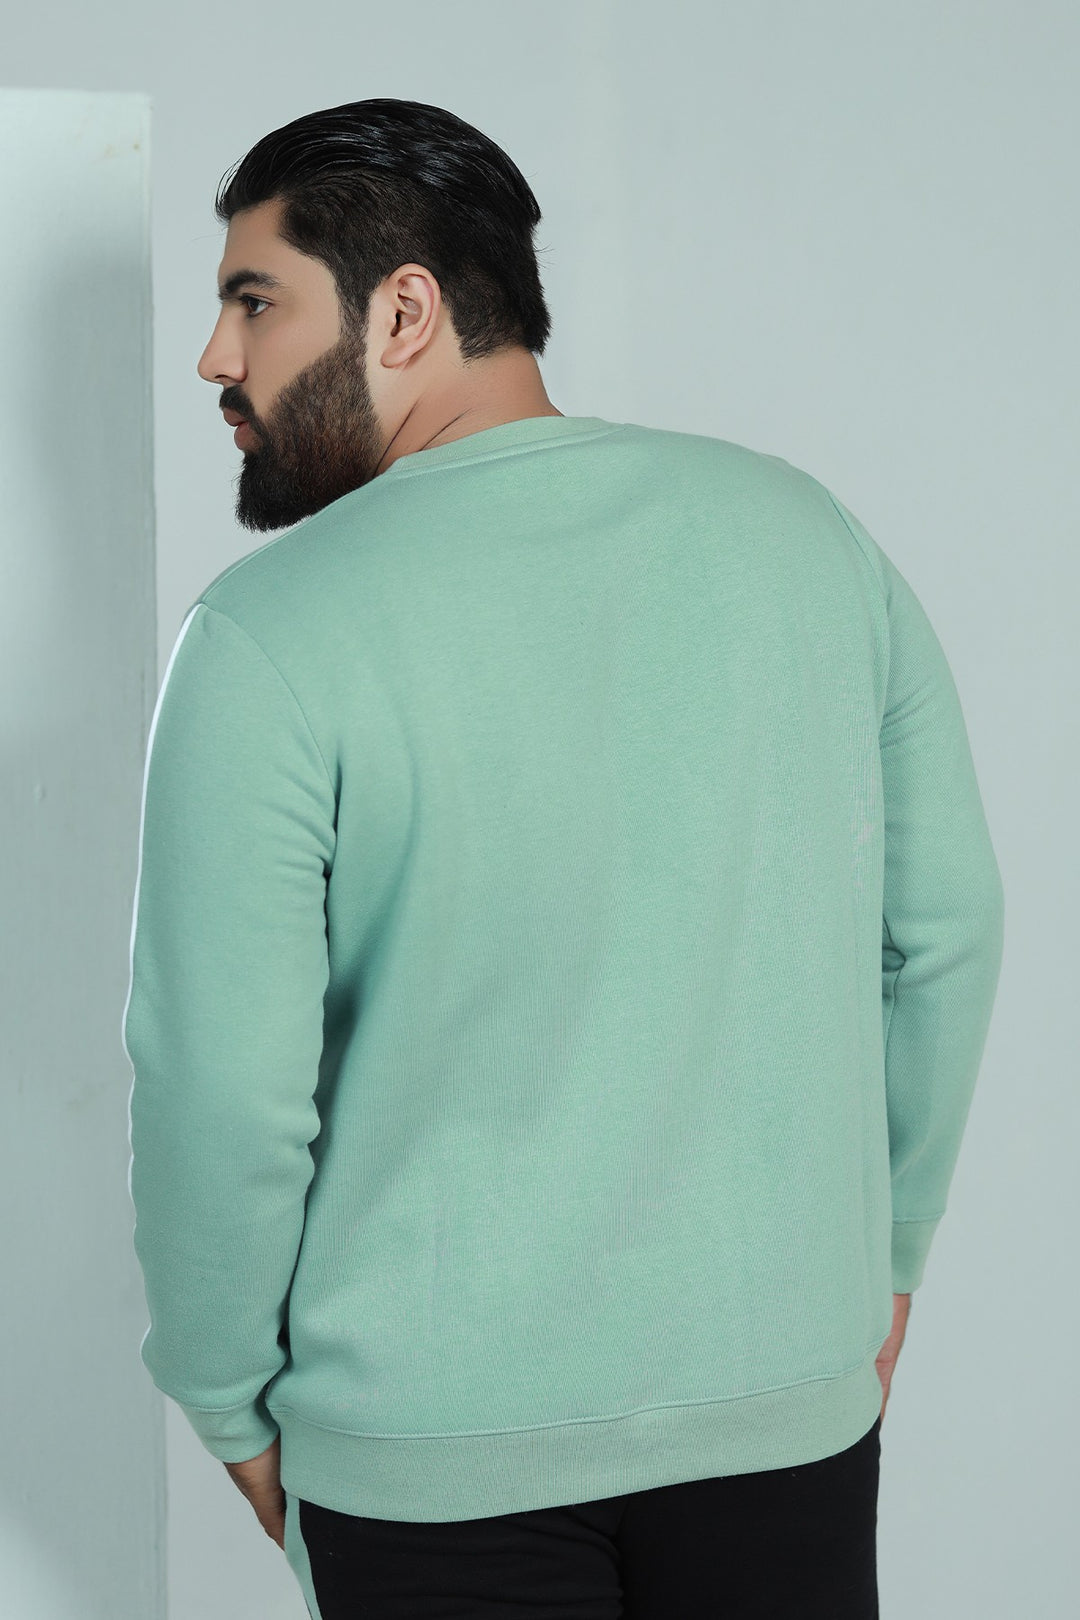 Tea Green Sweatshirt (Plus Size) - W21 - MSW009P